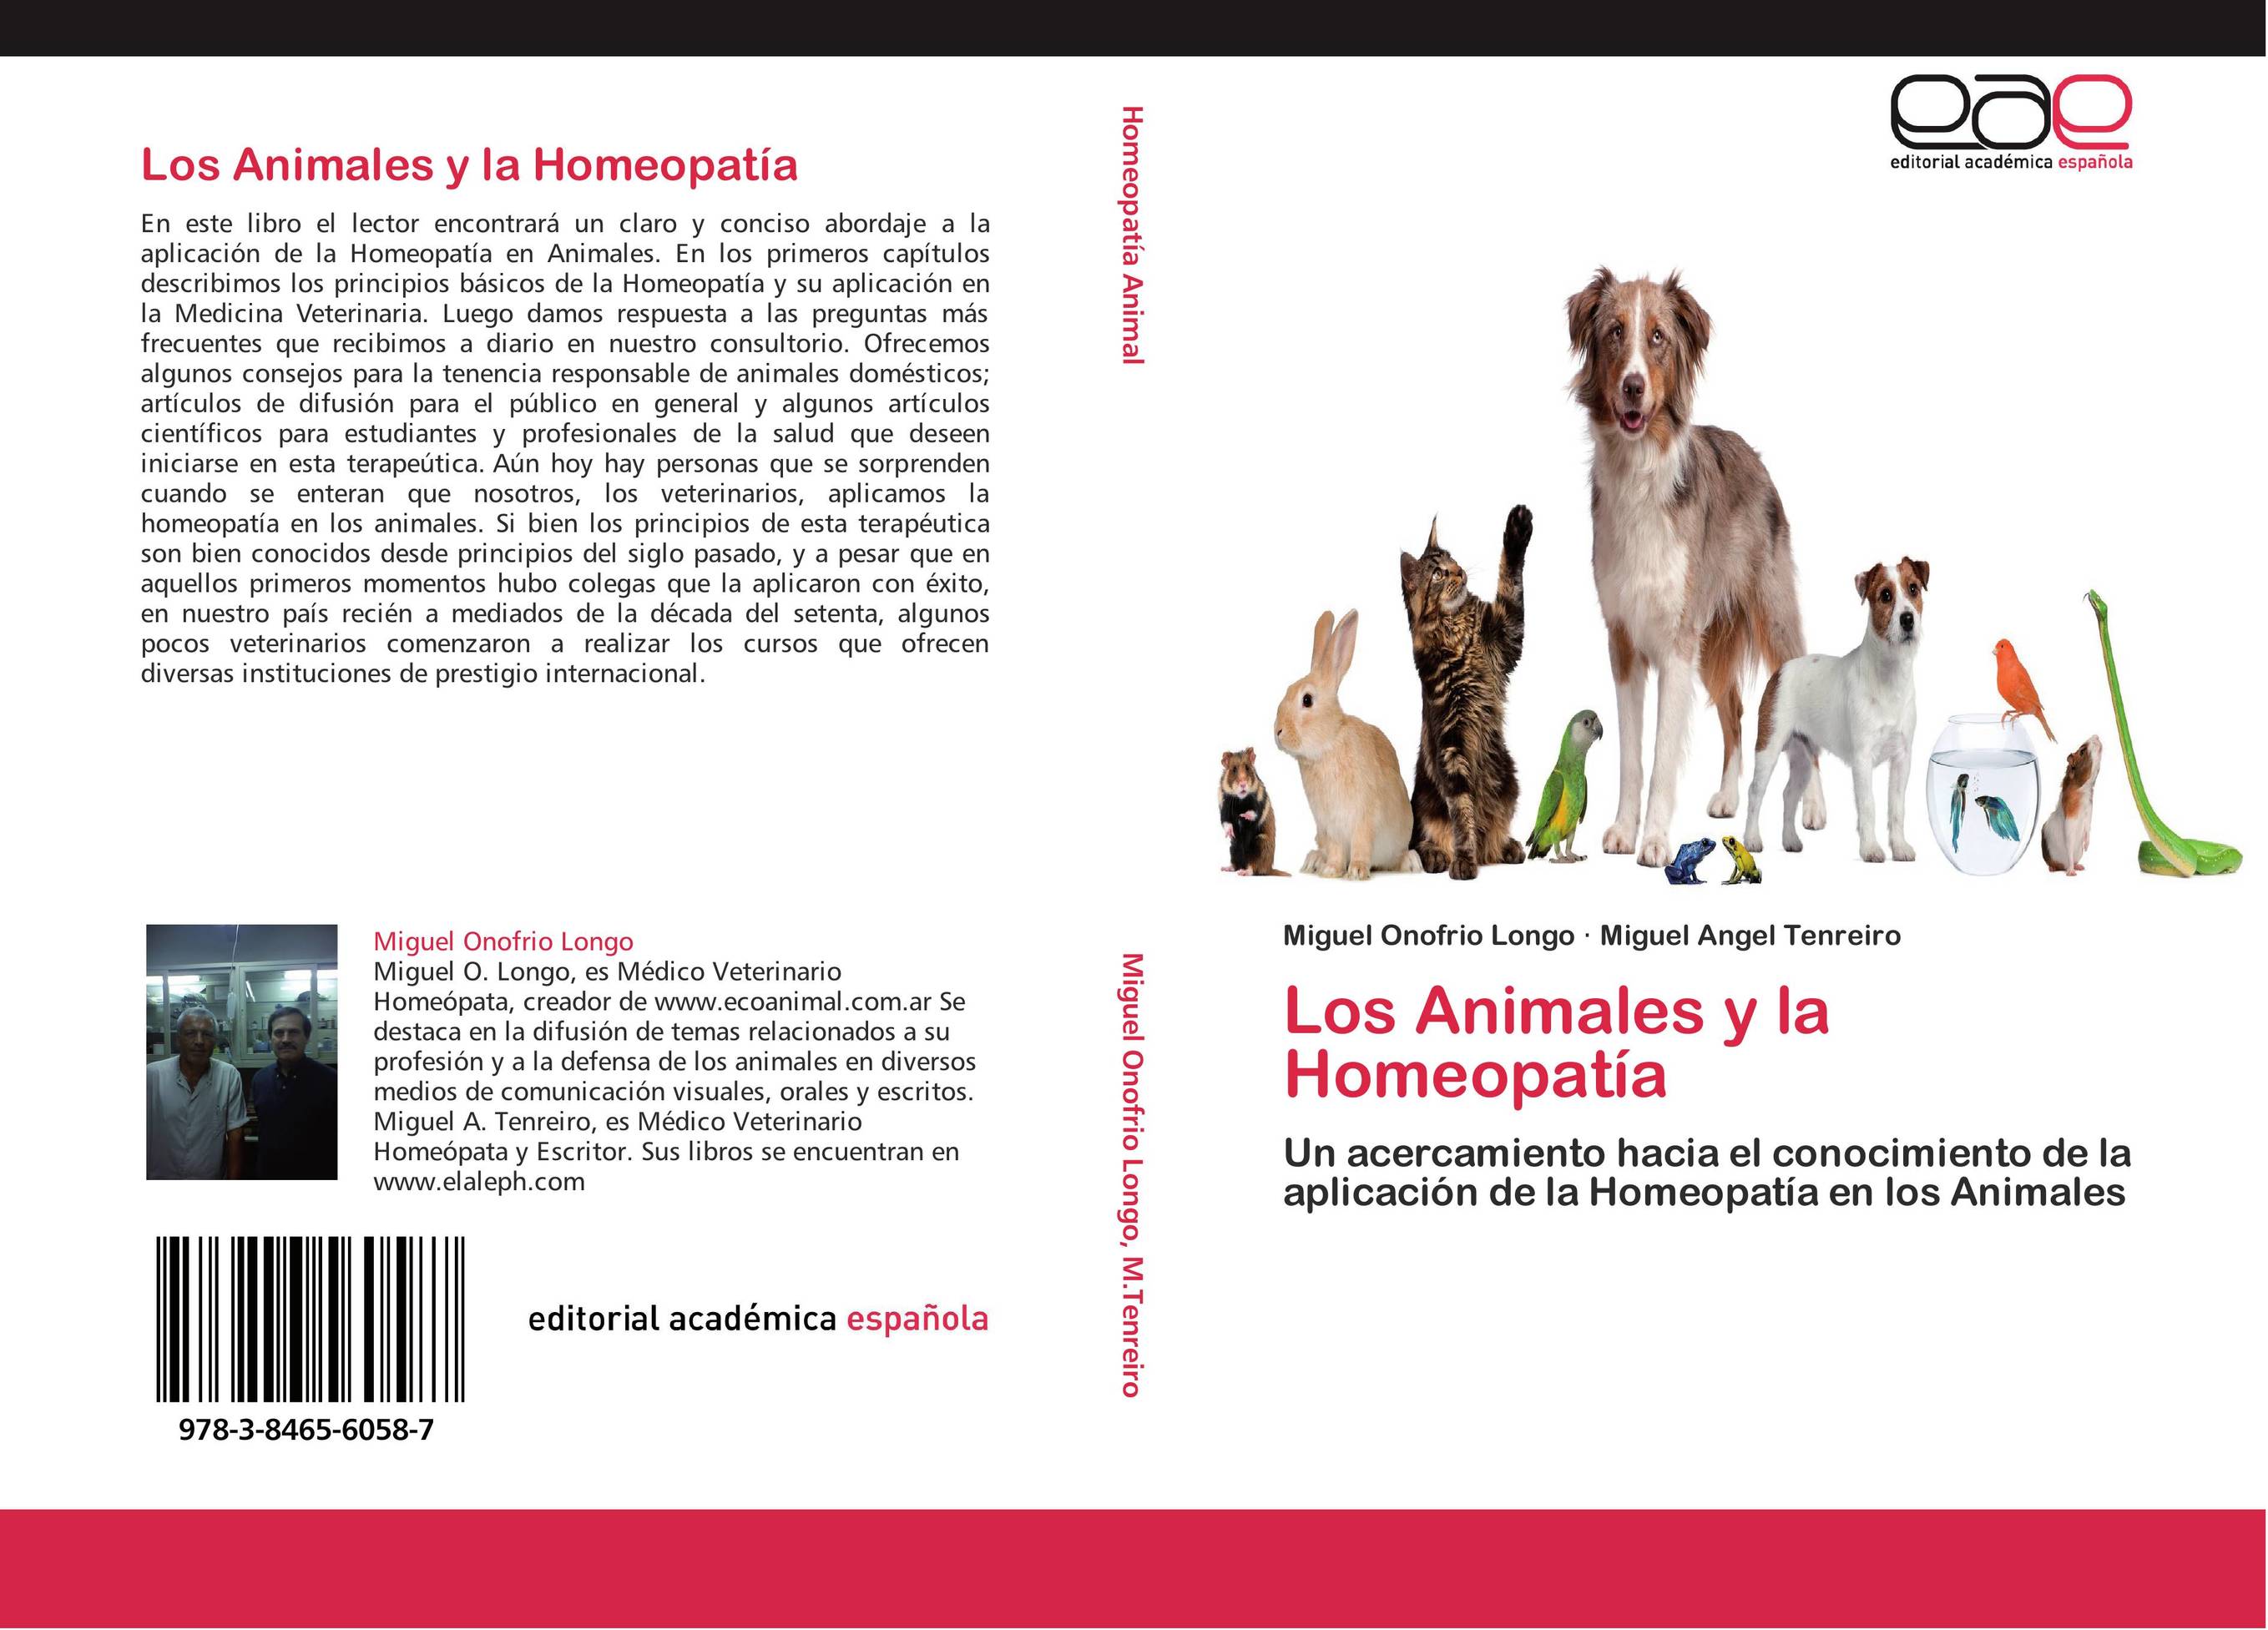 Los Animales y la Homeopatía